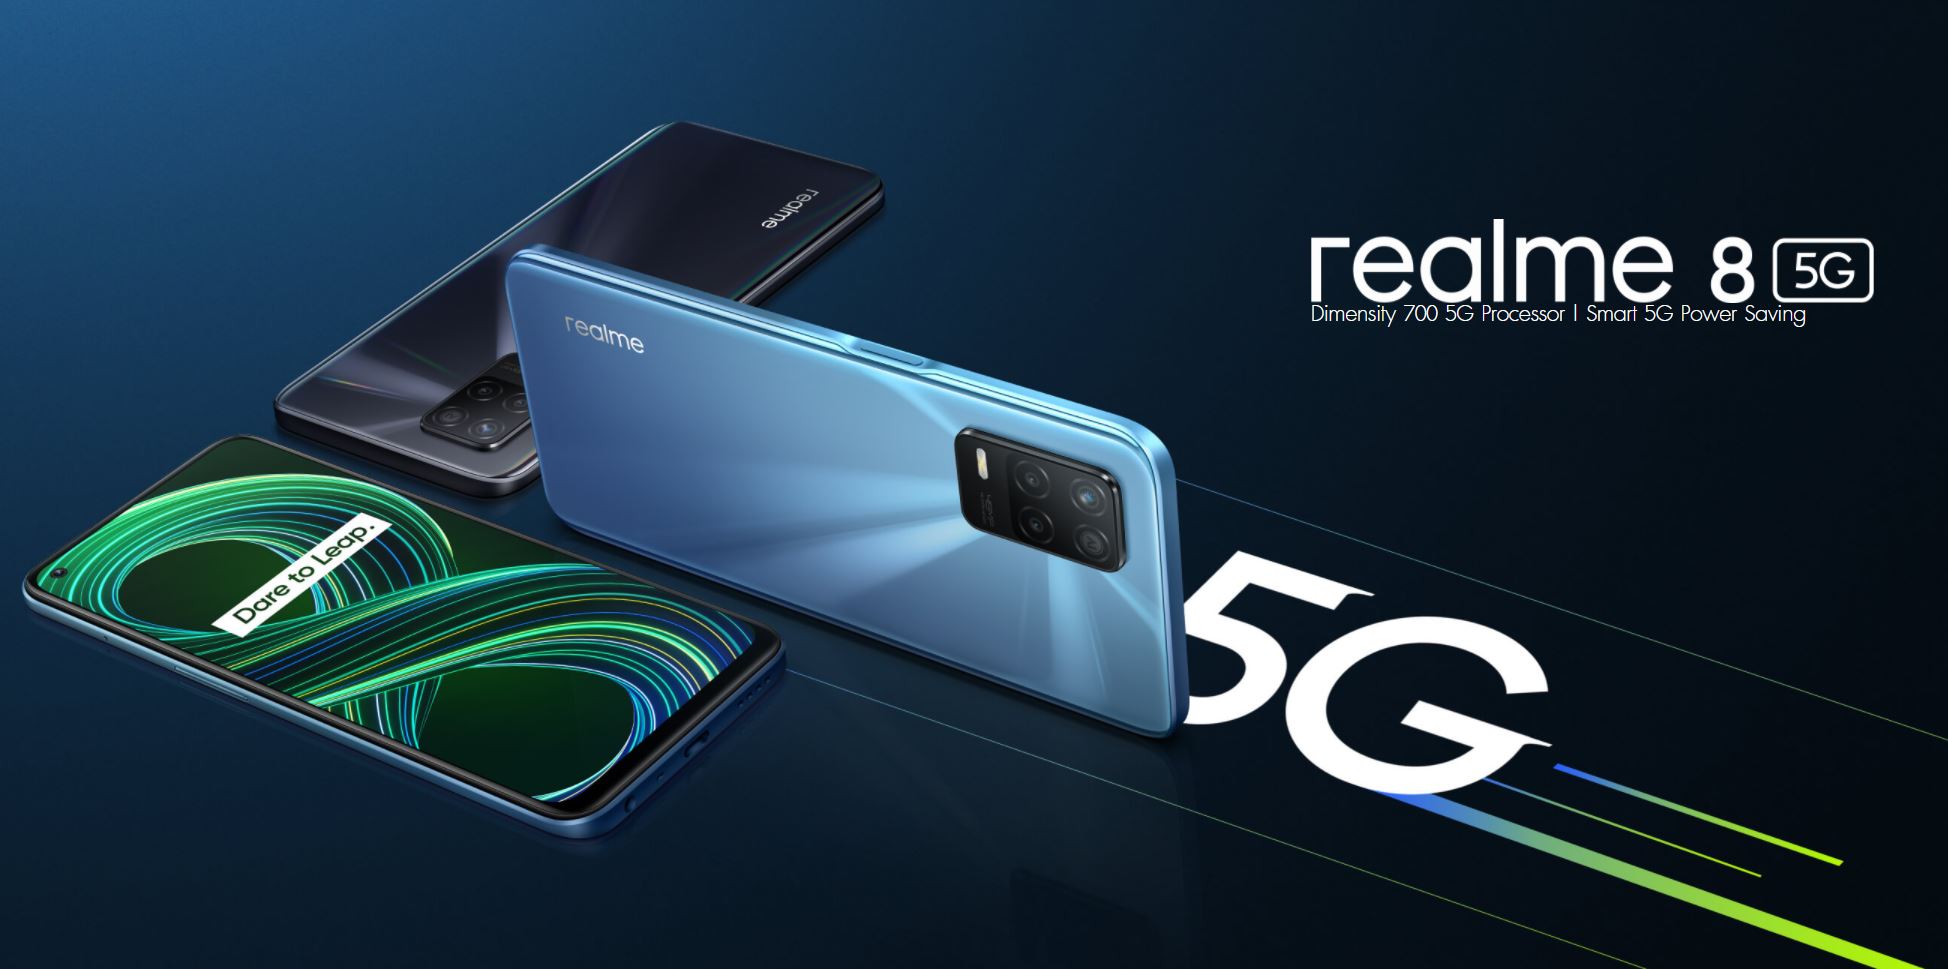 El Realme 8 5G está disponible a un precio rebajado de 254 dólares en AliExpress